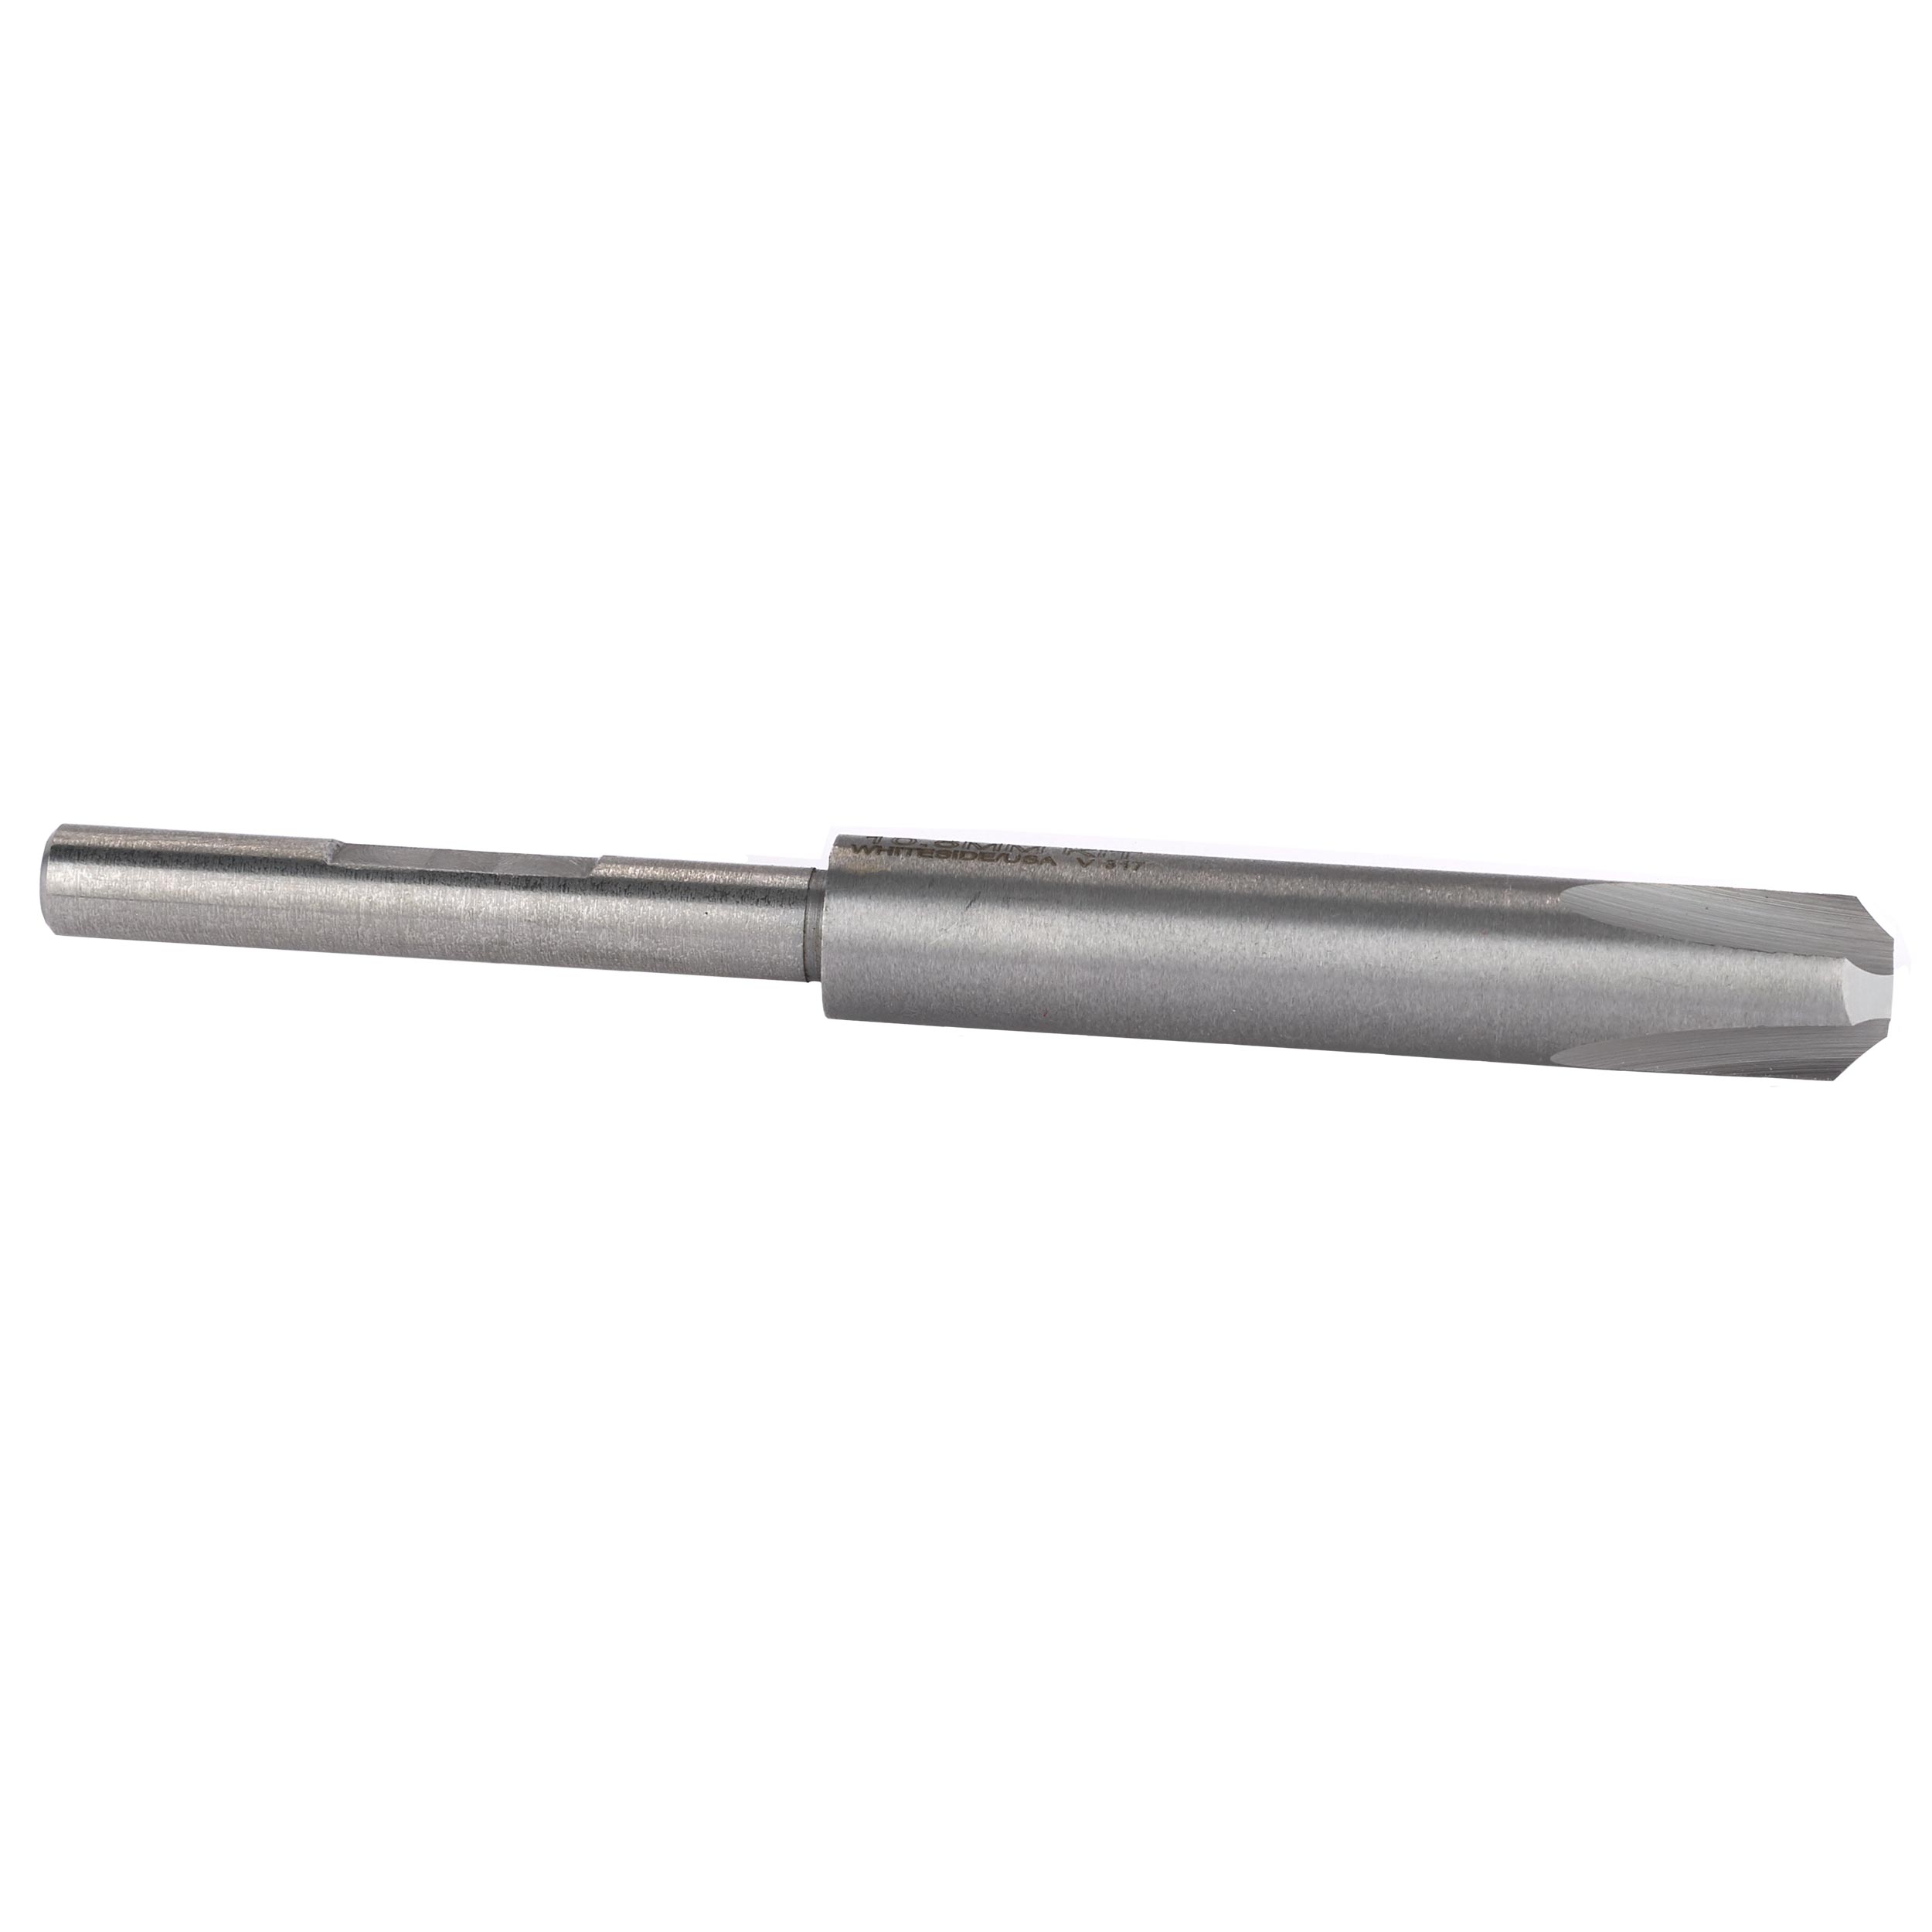 Pen Reamer 10.5mm Pilot Shaft